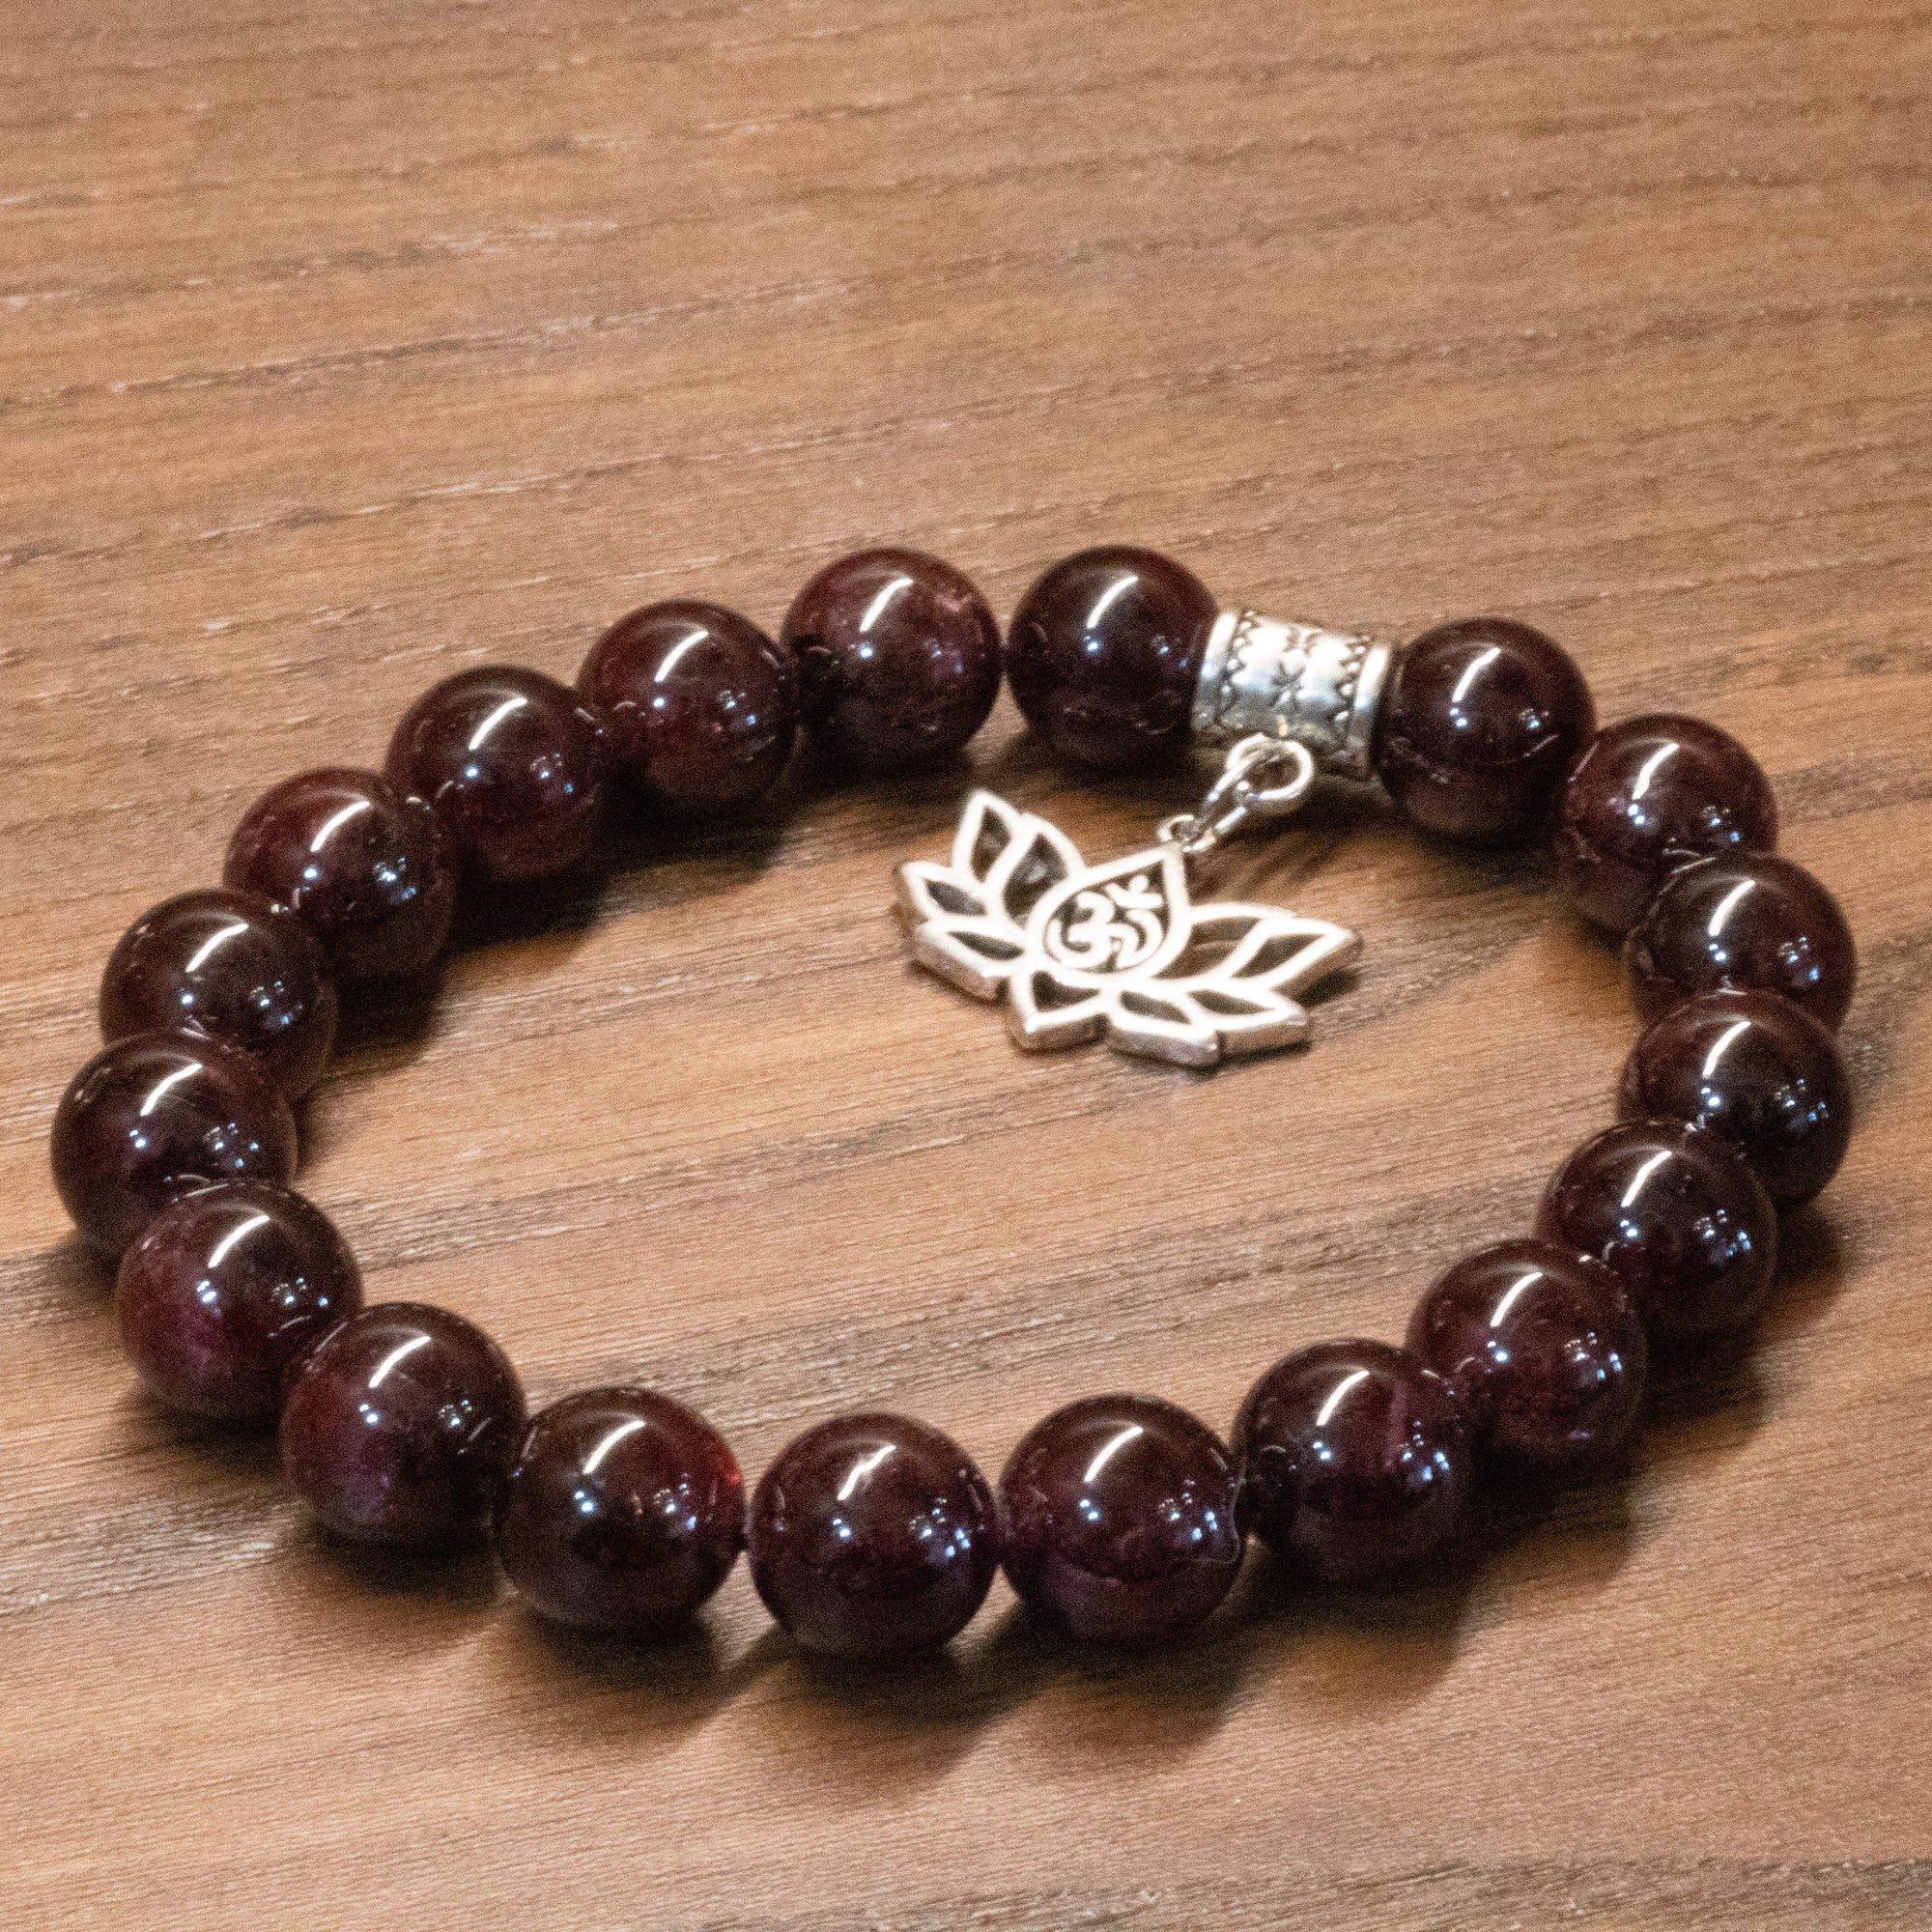 Handmade Garnet Bracelet - The Spirit of Life